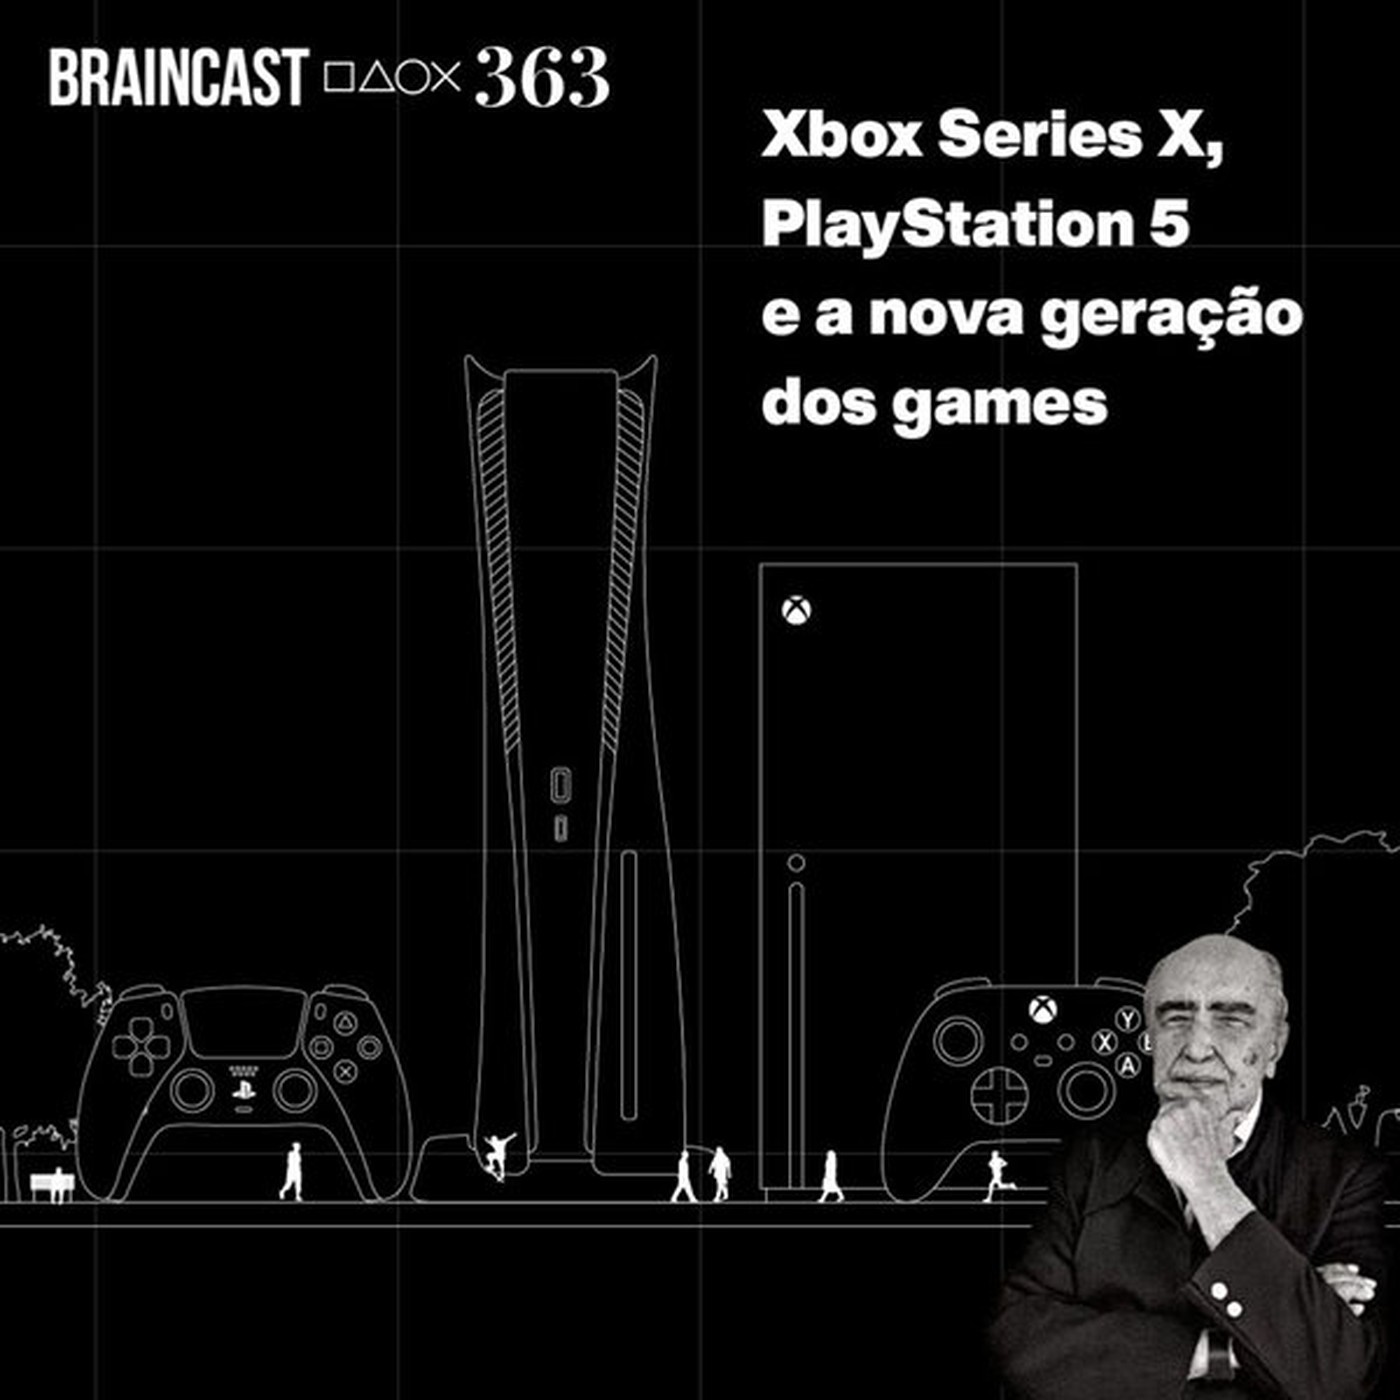 Xbox Series X, PlayStation 5 e a nova geração dos games